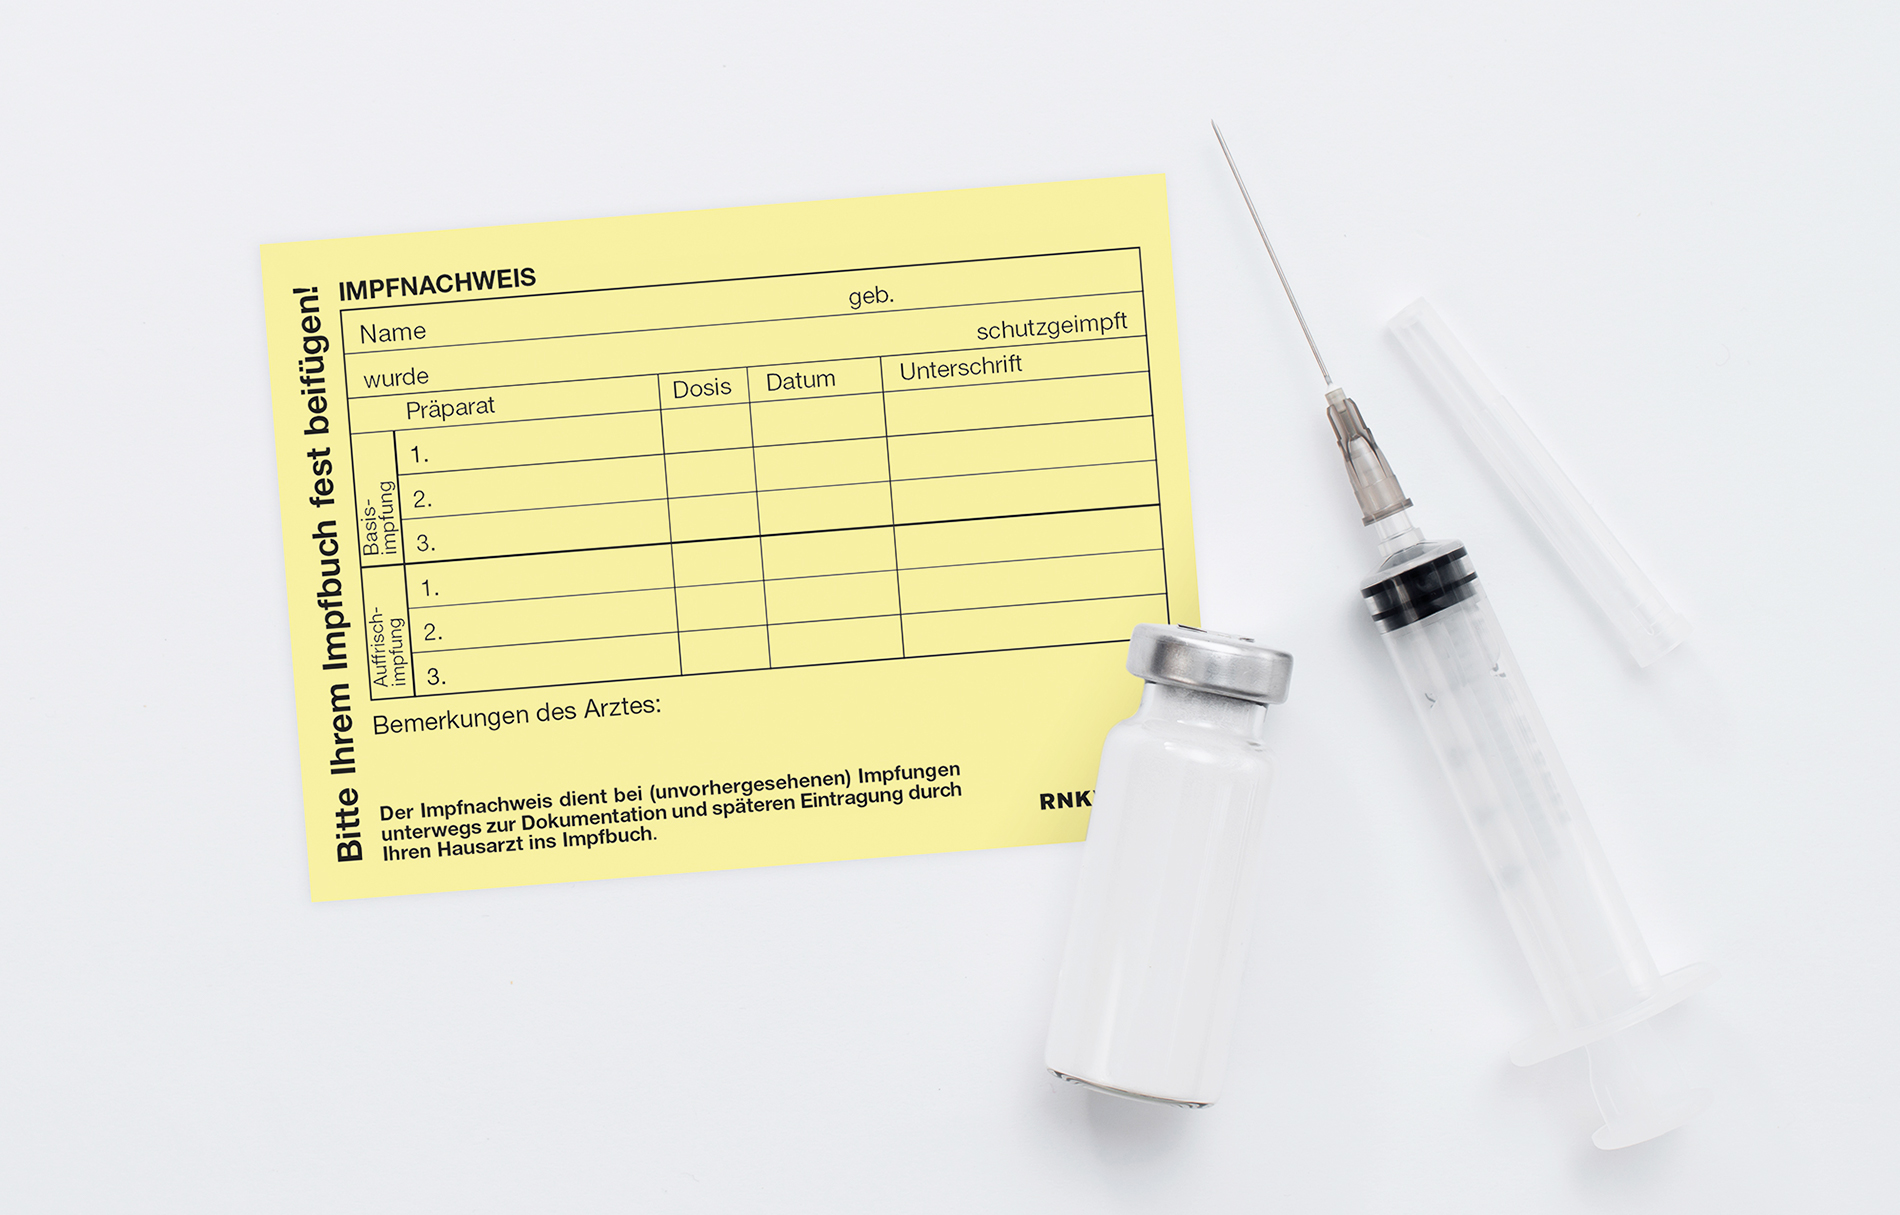 Impfnachweis zur Nachverfolgung liegt neben einer Spritze